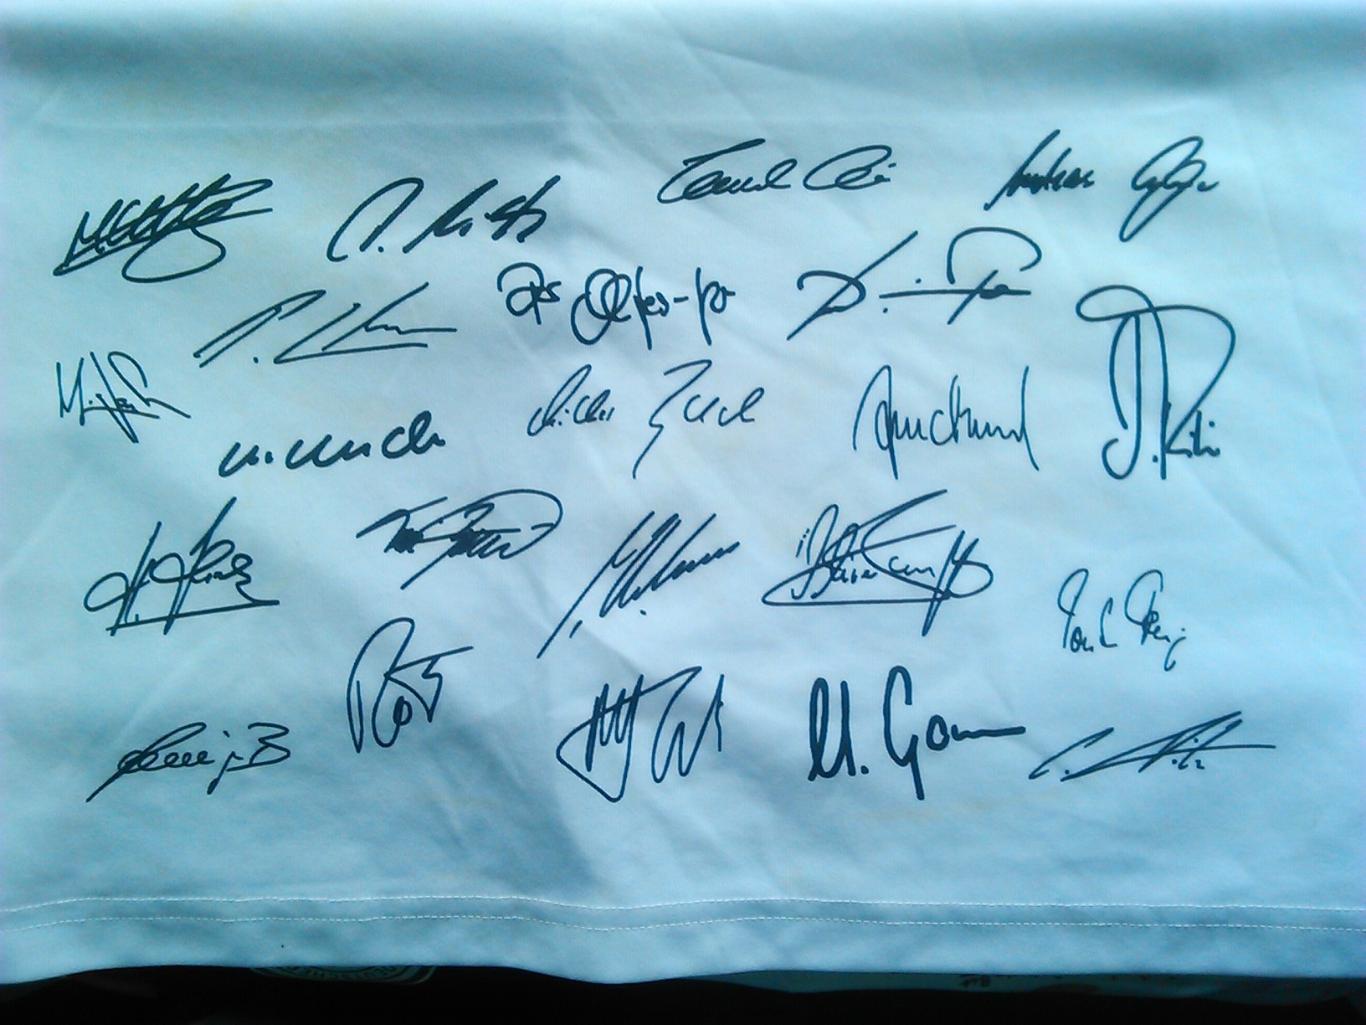 Автографы футболистов сборной Германии 2010 на футболке болельщика. Оптом скидки